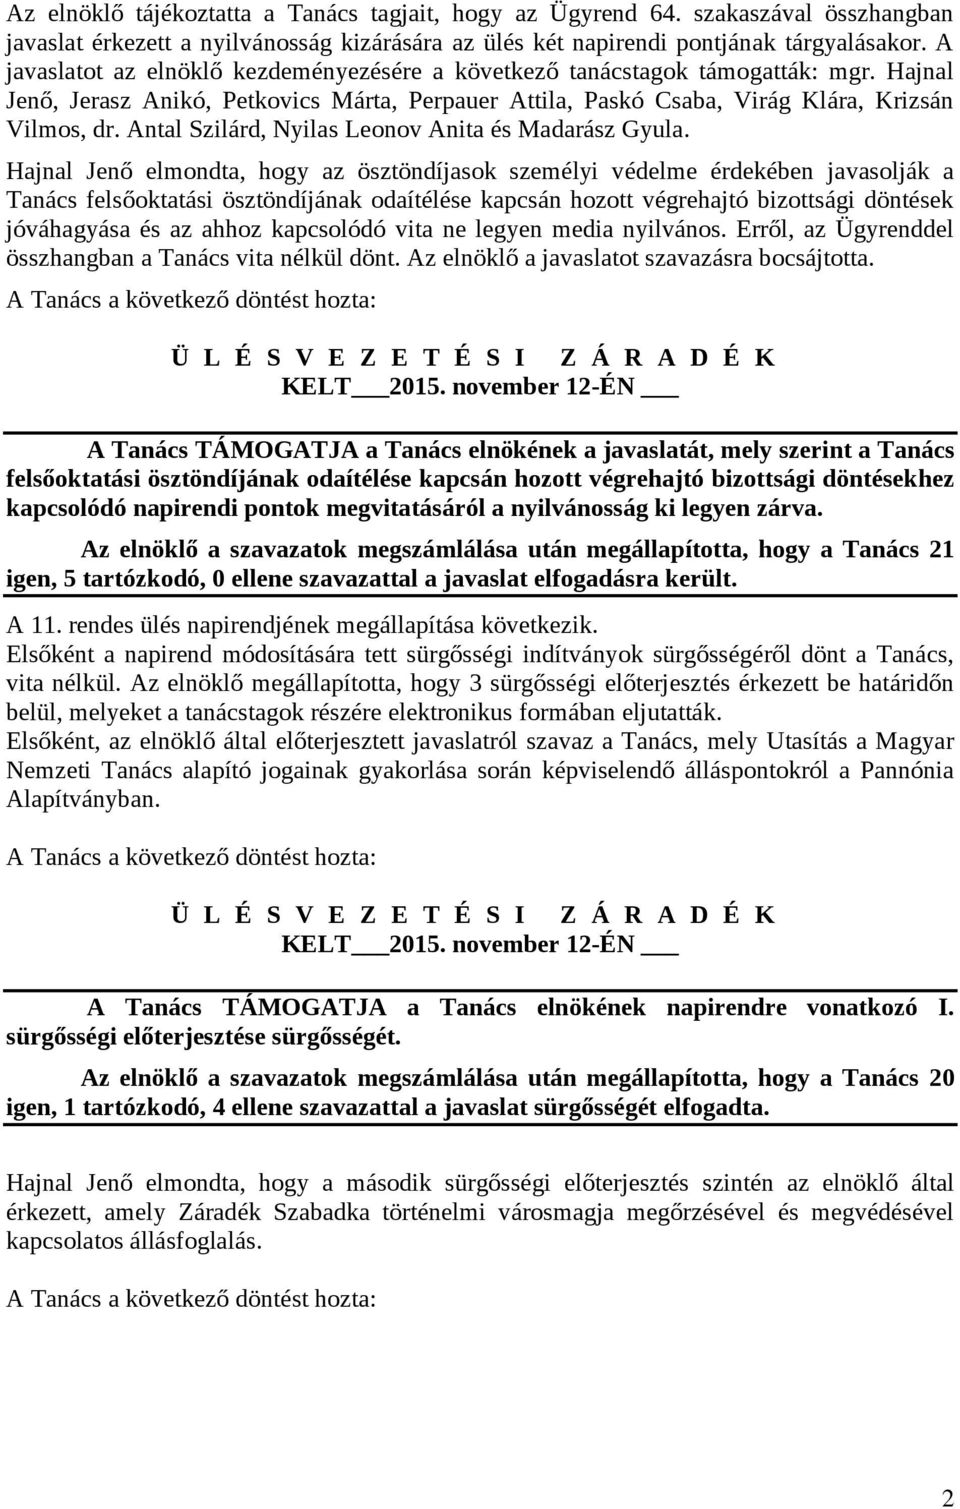 Antal Szilárd, Nyilas Leonov Anita és Madarász Gyula.